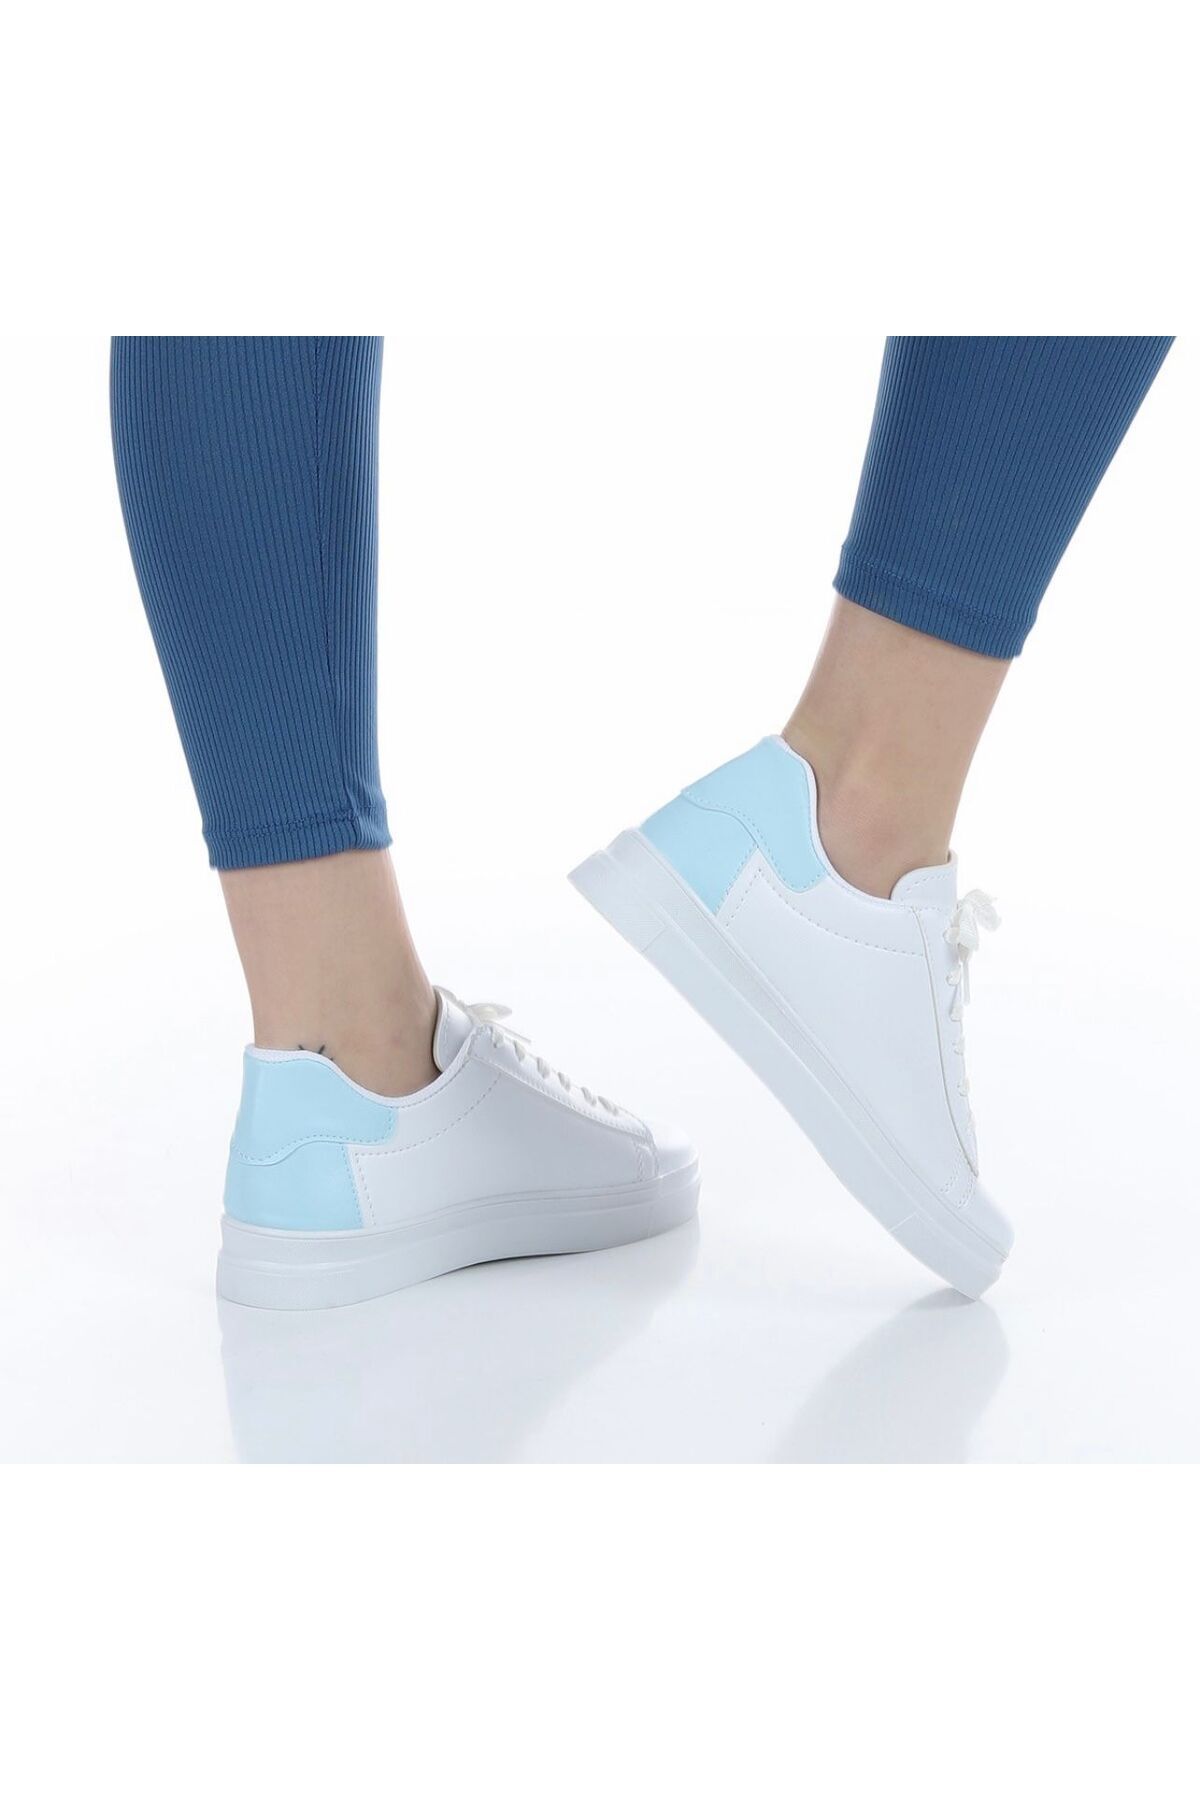 diclepolat Kadın Beyaz Spor Ayakkabı Günlük Sneaker